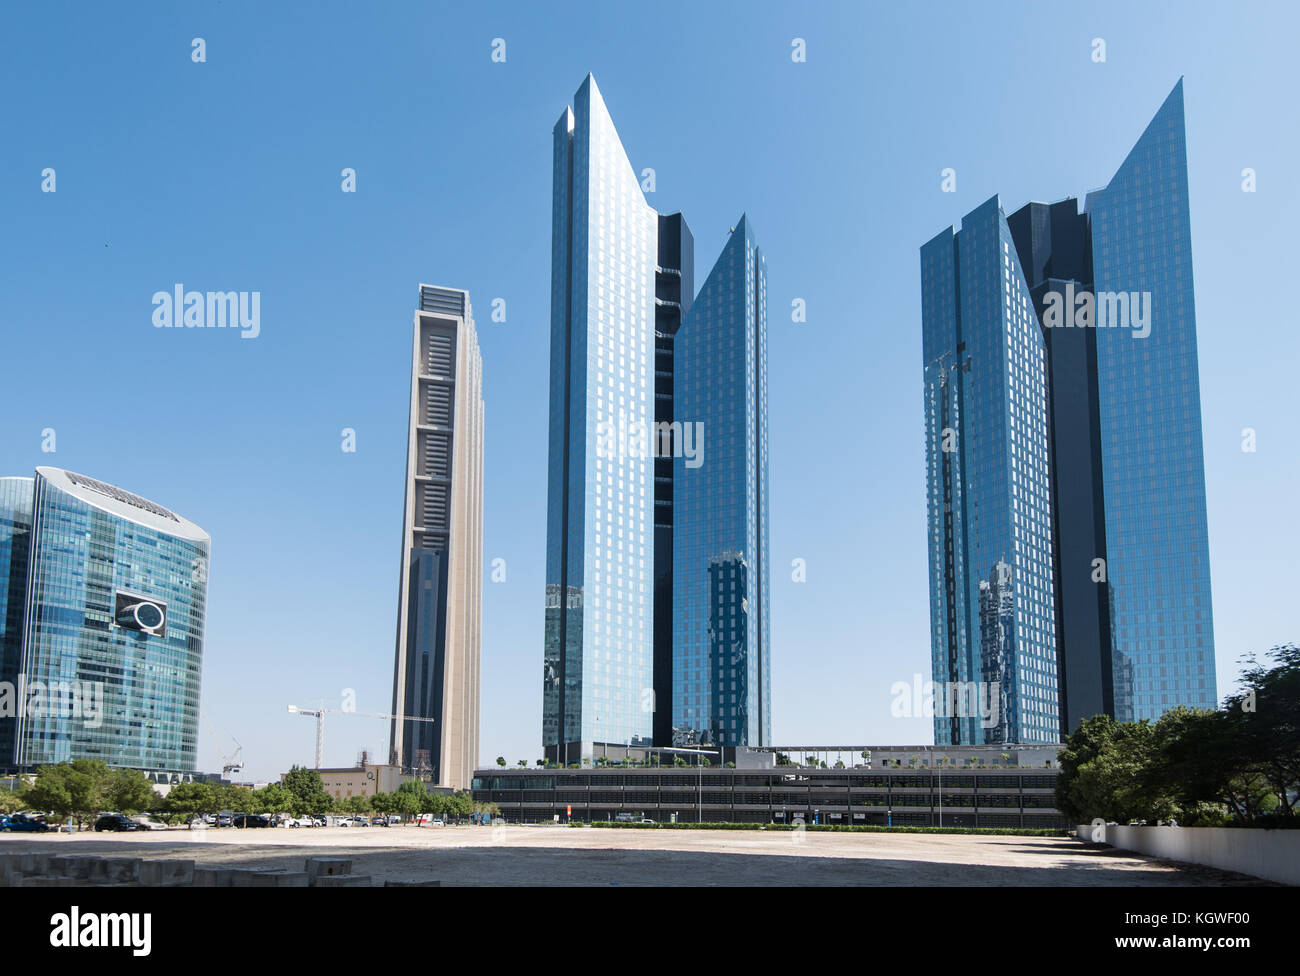 Dubaï, Émirats arabes unis - 29oct2017 : Central Park Towers de difc, Dubaï. l'index tour peut également être vu à droite, Banque D'Images